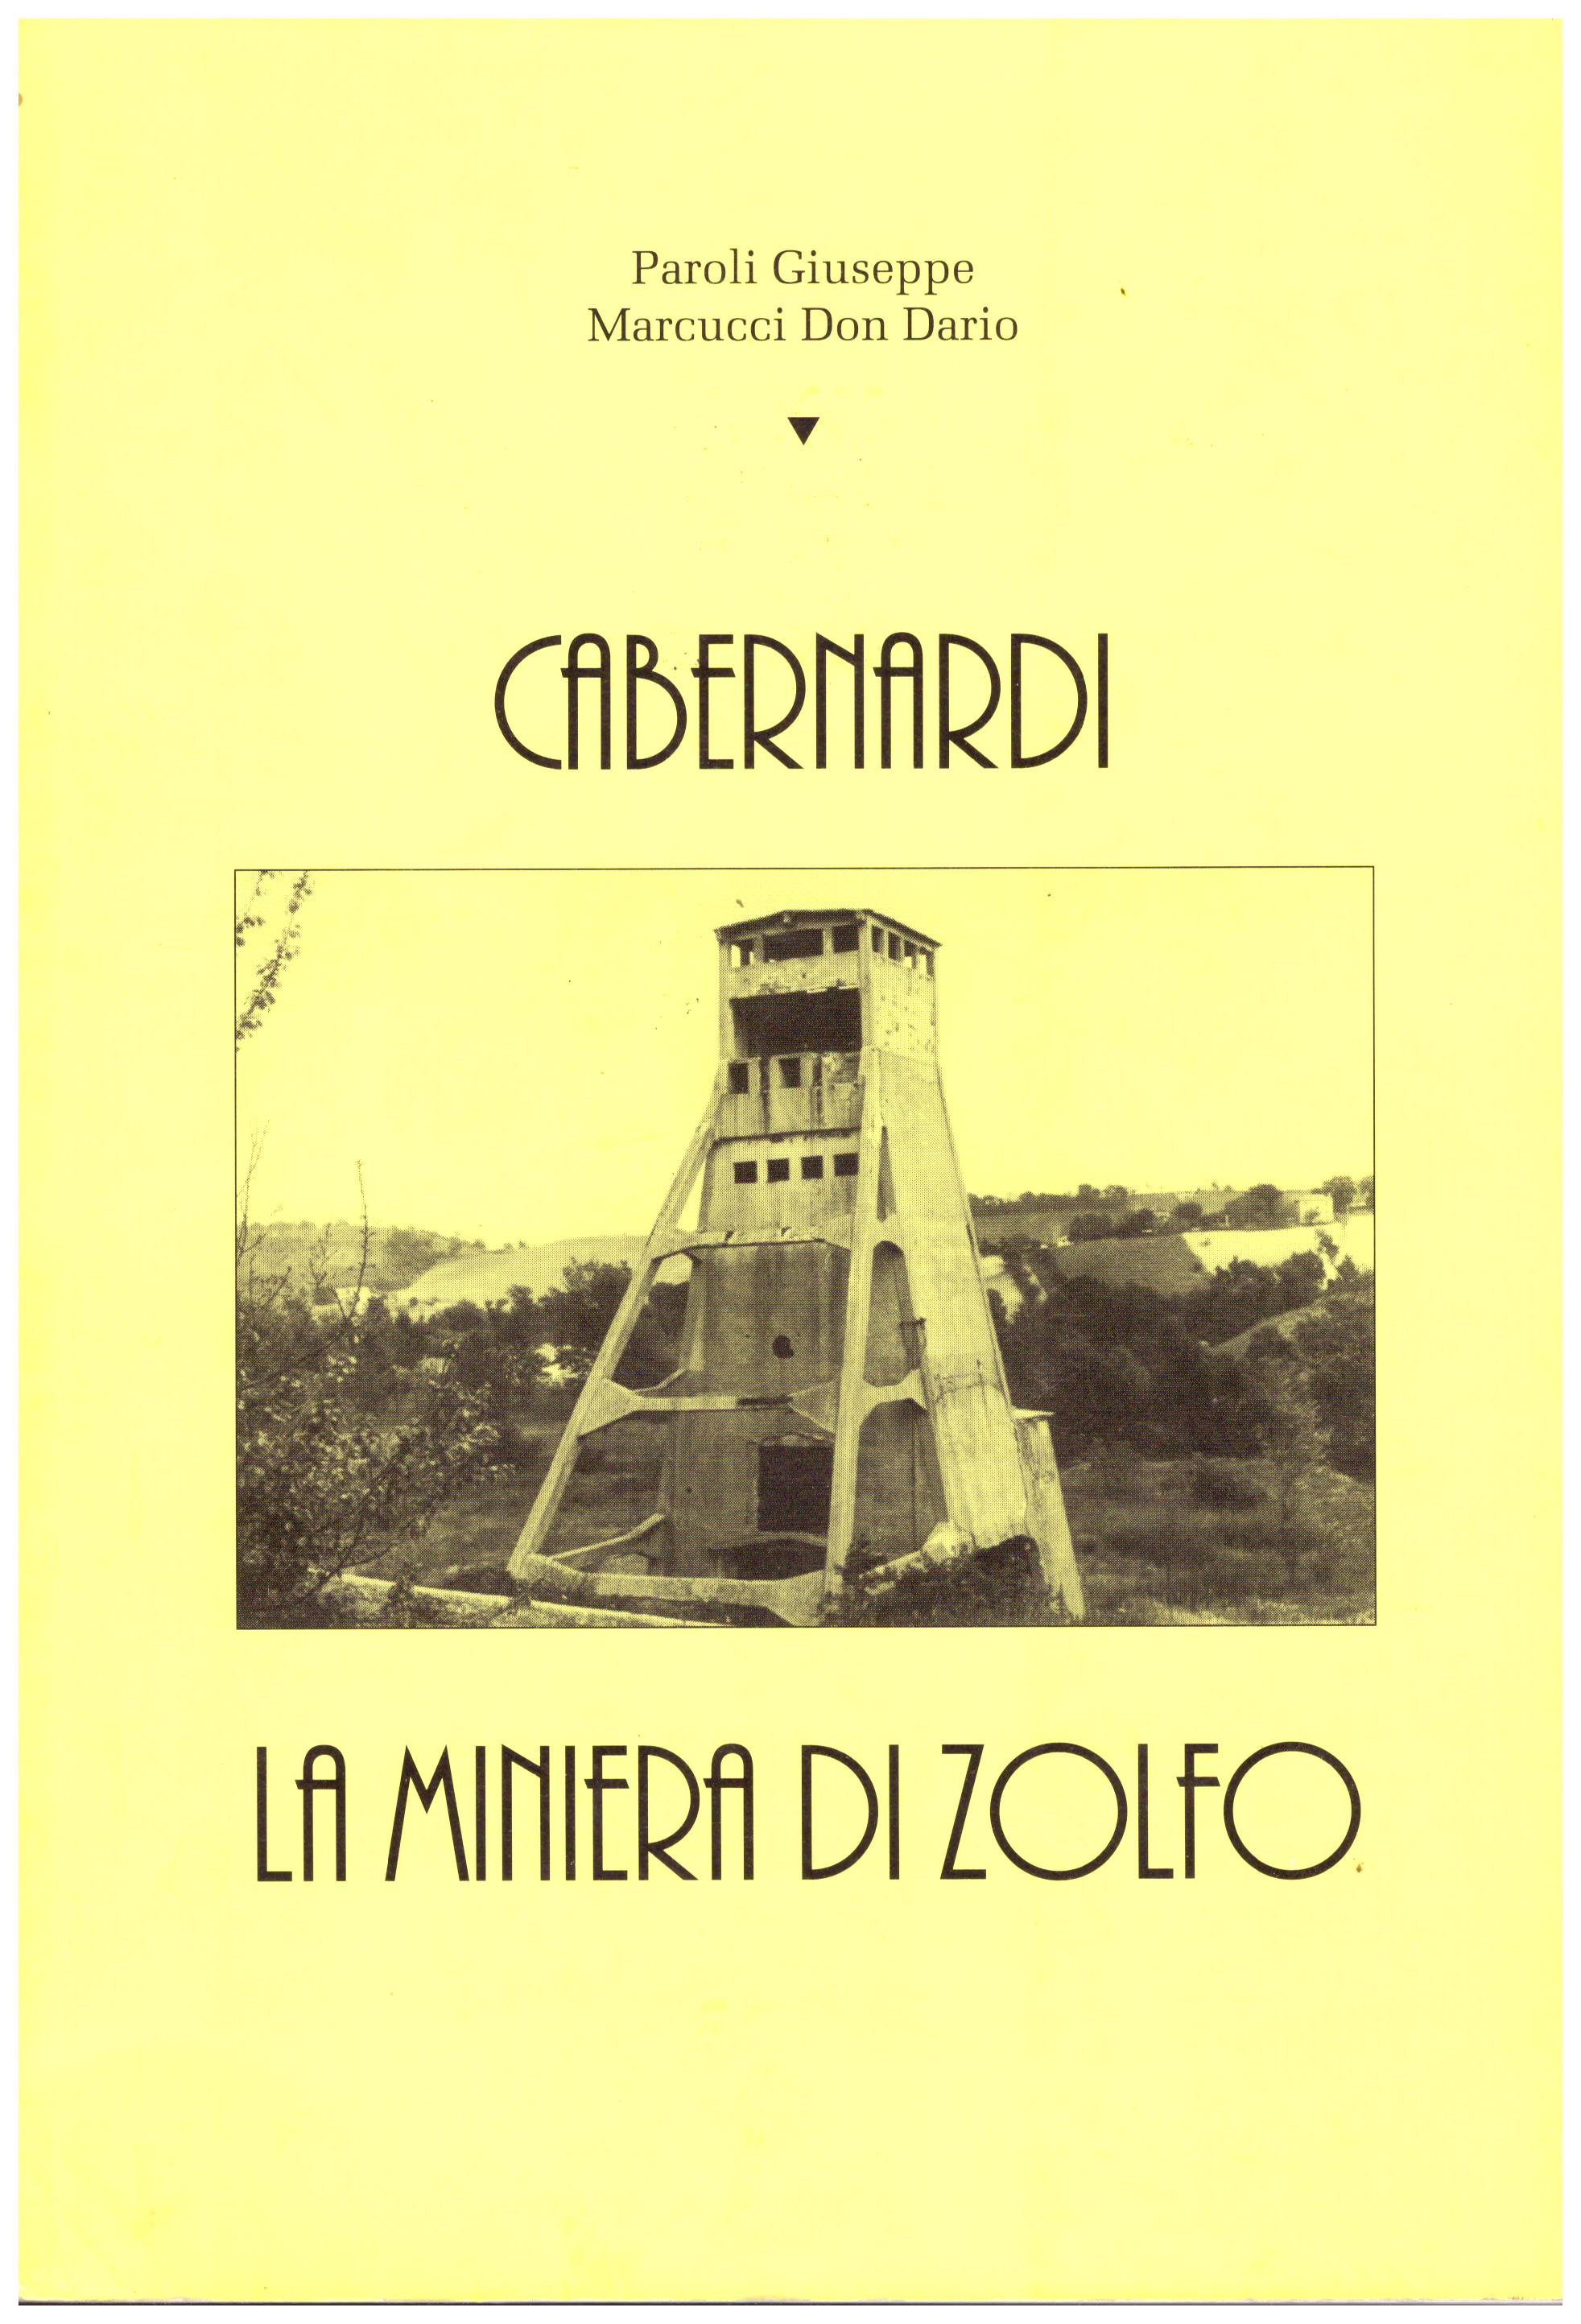 Titolo: Cabernardi La miniera di zolfo Autore : Paroli Giuseppe, Marcucci Don Dario Editore: Tipografia Garofoli, Sassoferrato 1992